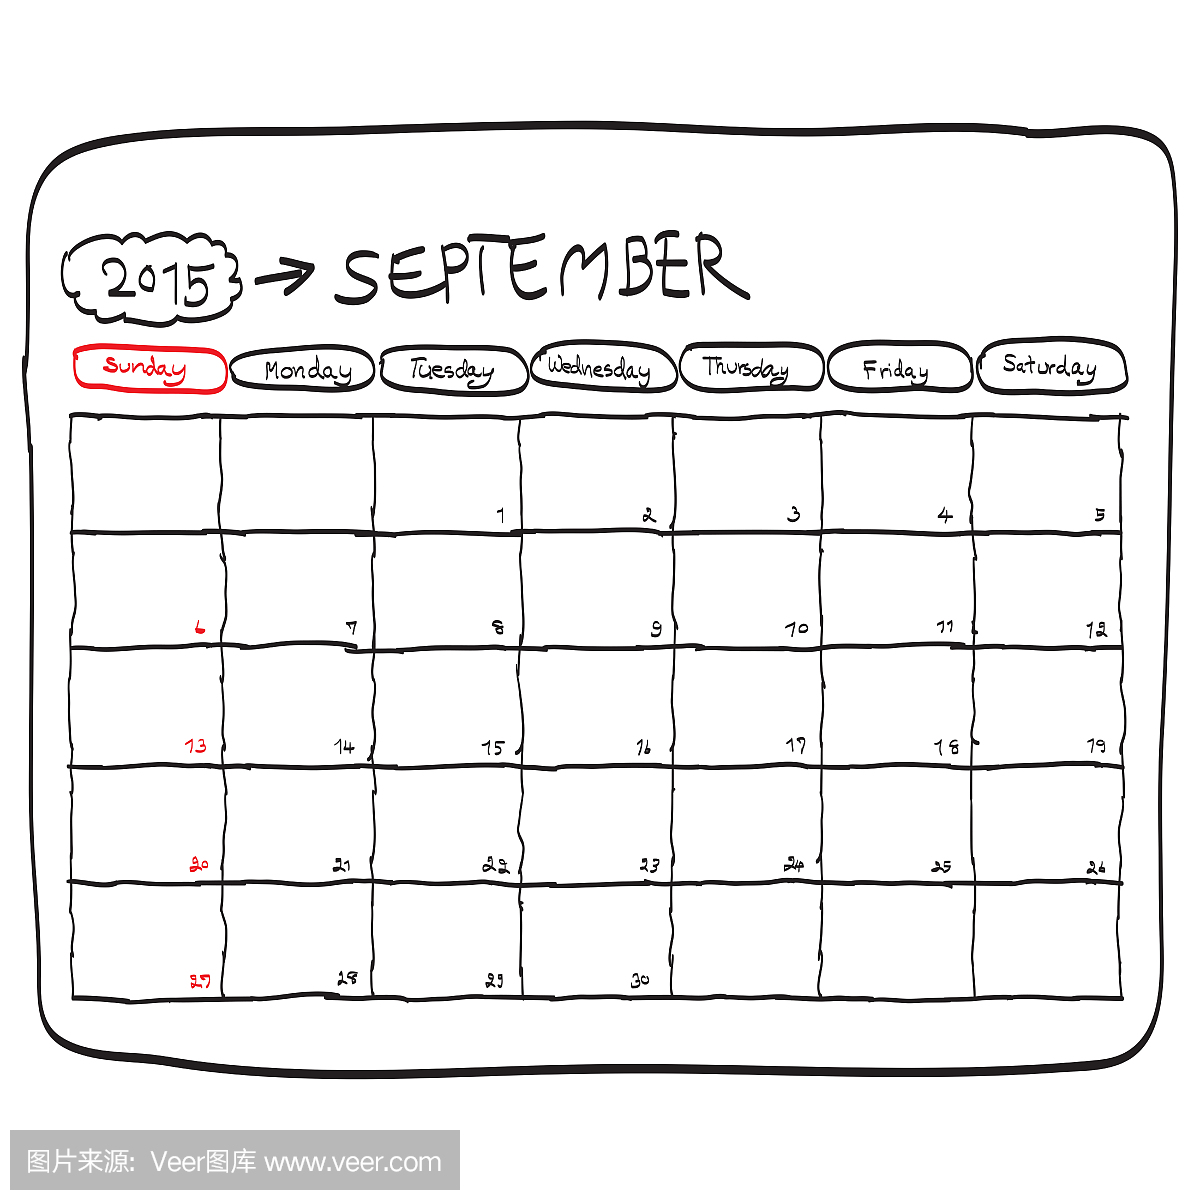 2015年9月计划日历,涂鸦手绘